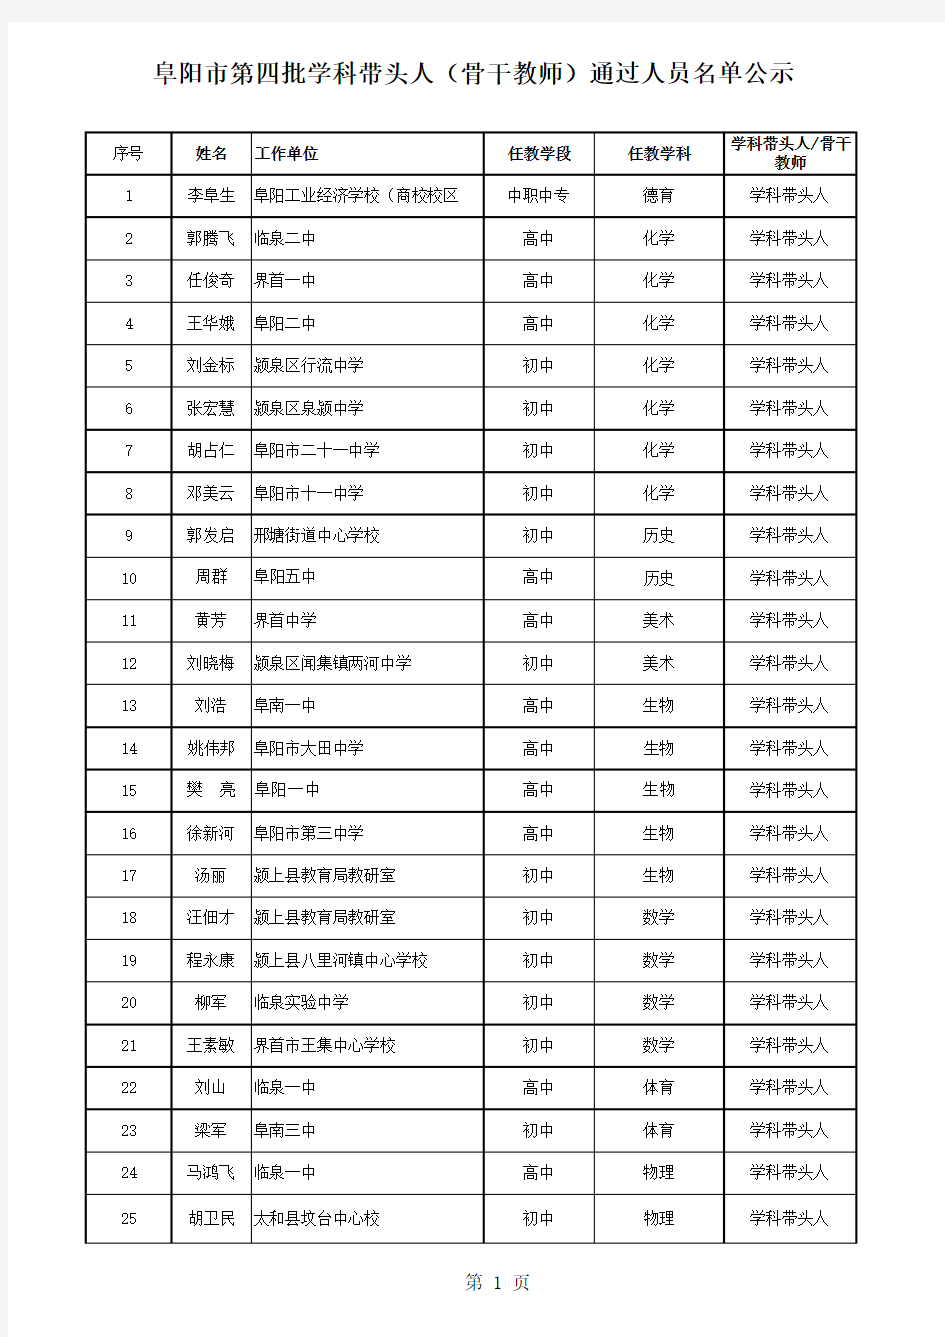 阜阳市第四批学科带头人(骨干教师)通过人员名单公示